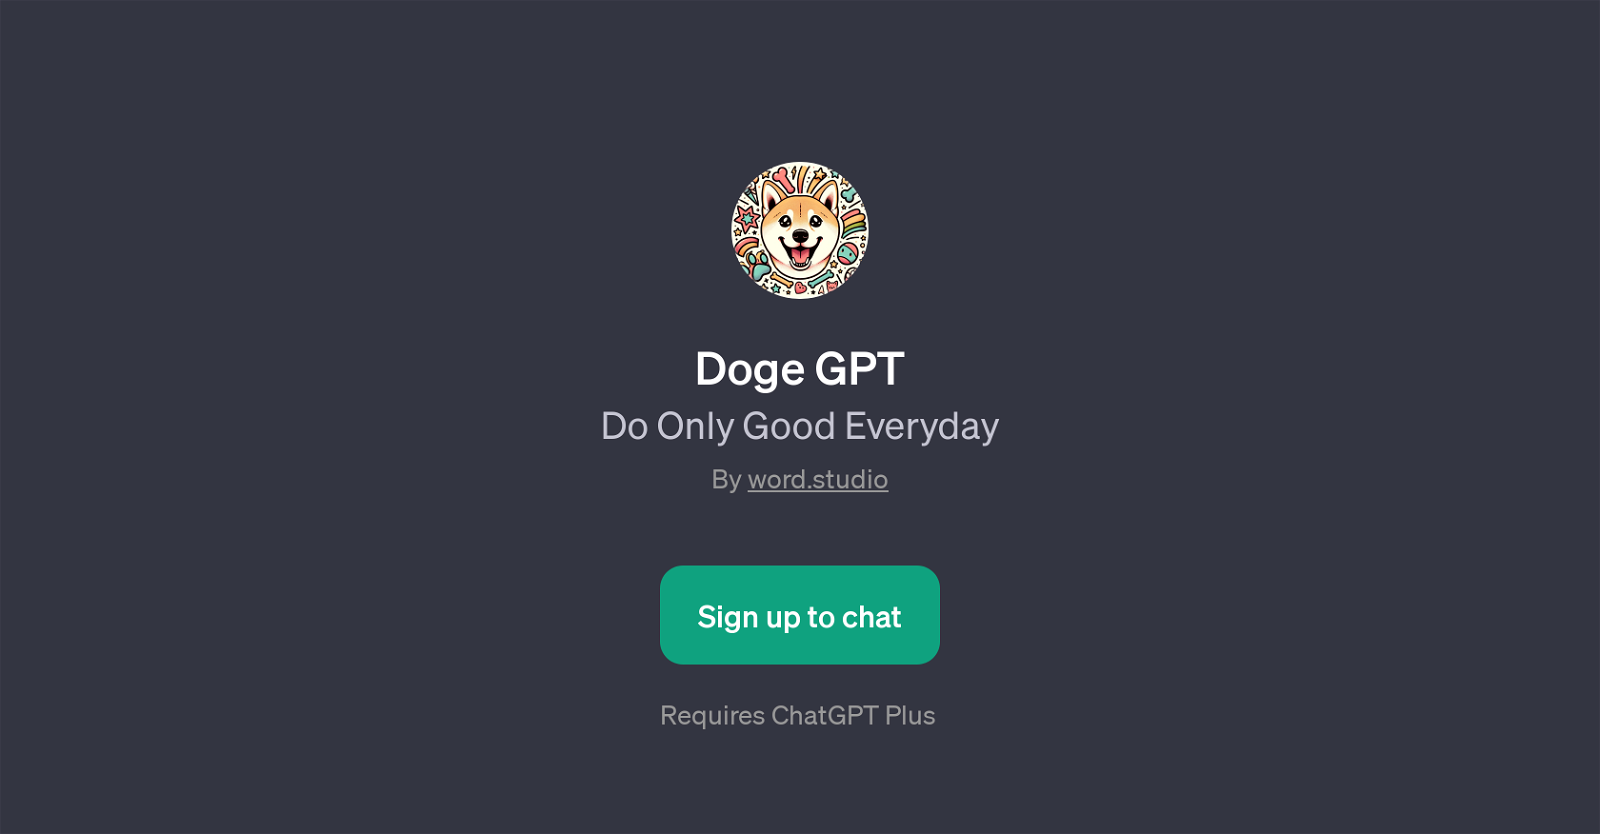 Doge GPT website